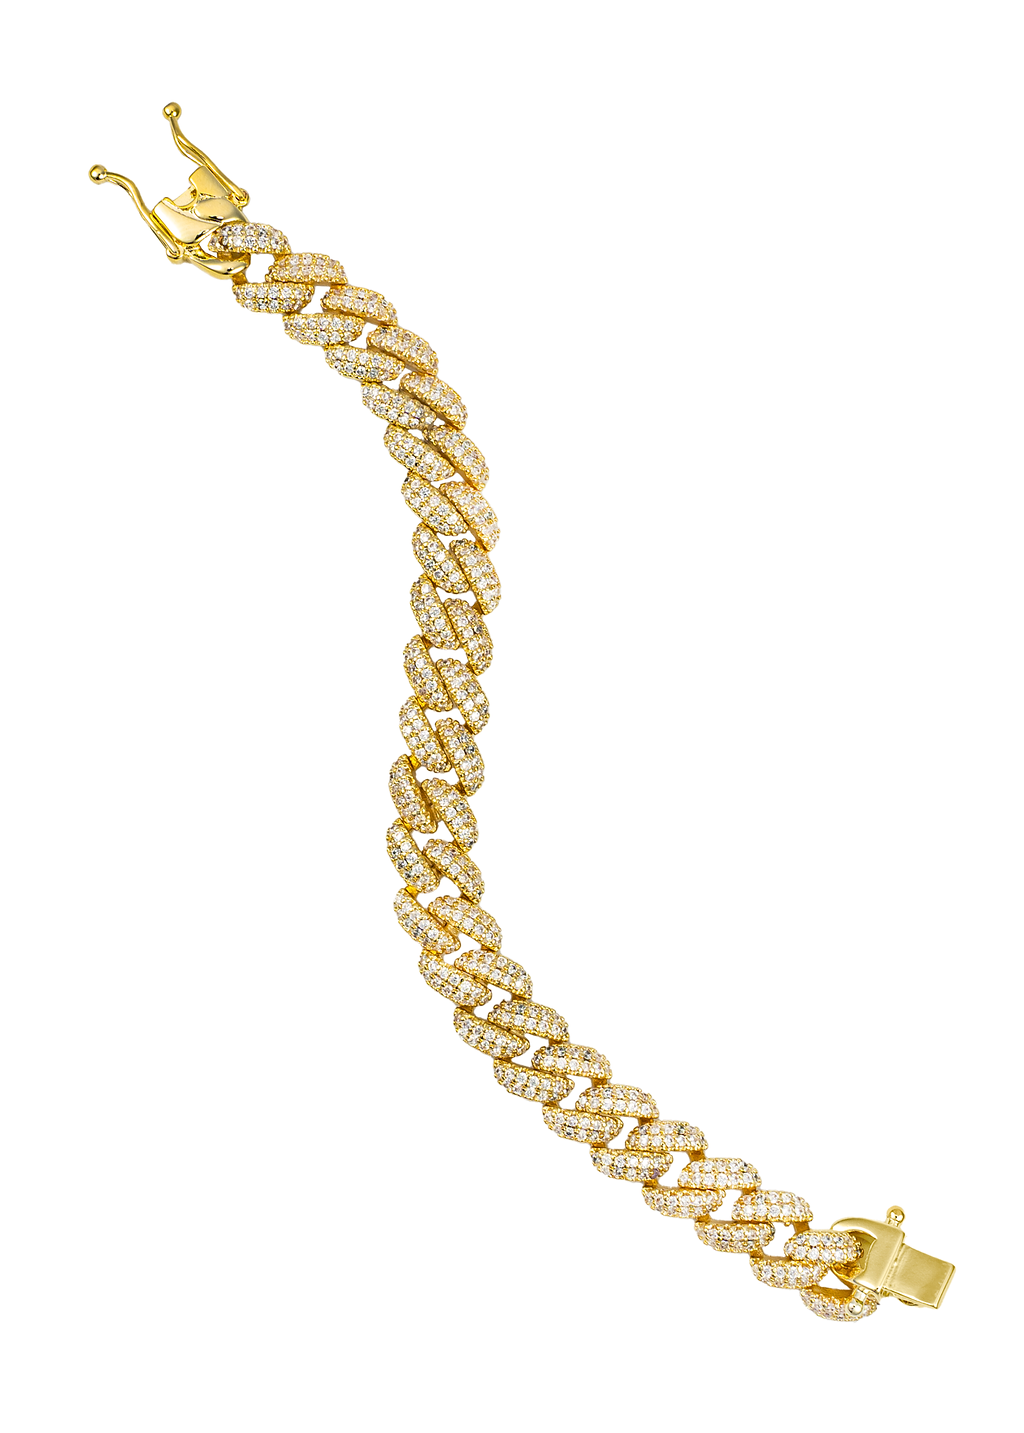 Cuban Curb Chain Bracelet With CZ Stones